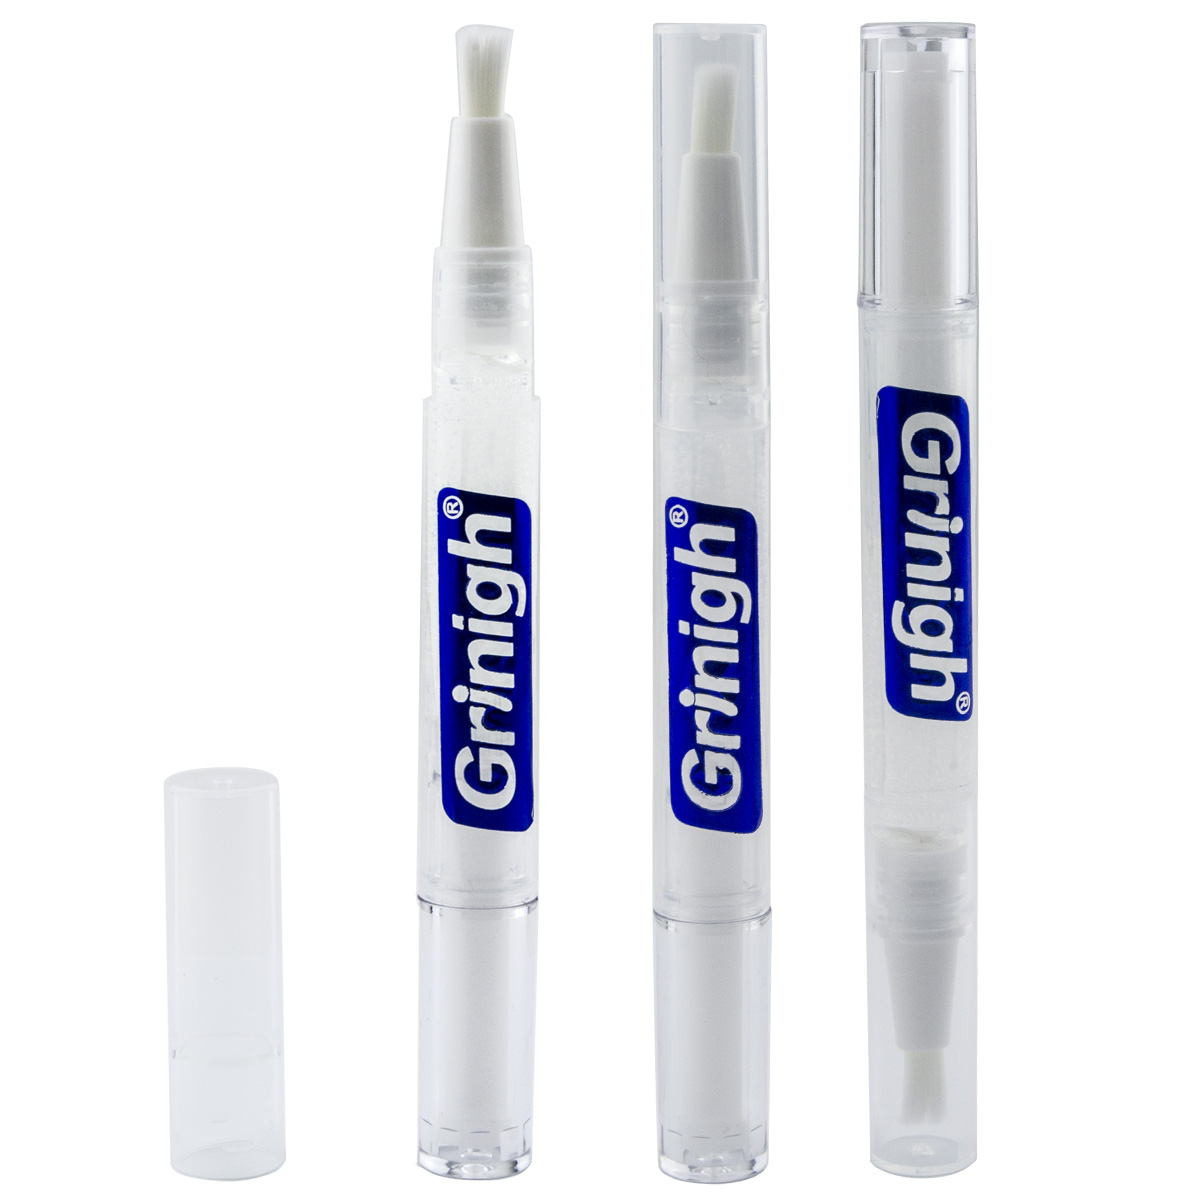 Grin365 Precise White Teeth Whitening Applicator Pen met natuurlijke ingrediënten - 3 tellen - Geconcentreerde Strength Gel (6% Waterstof peroxide)